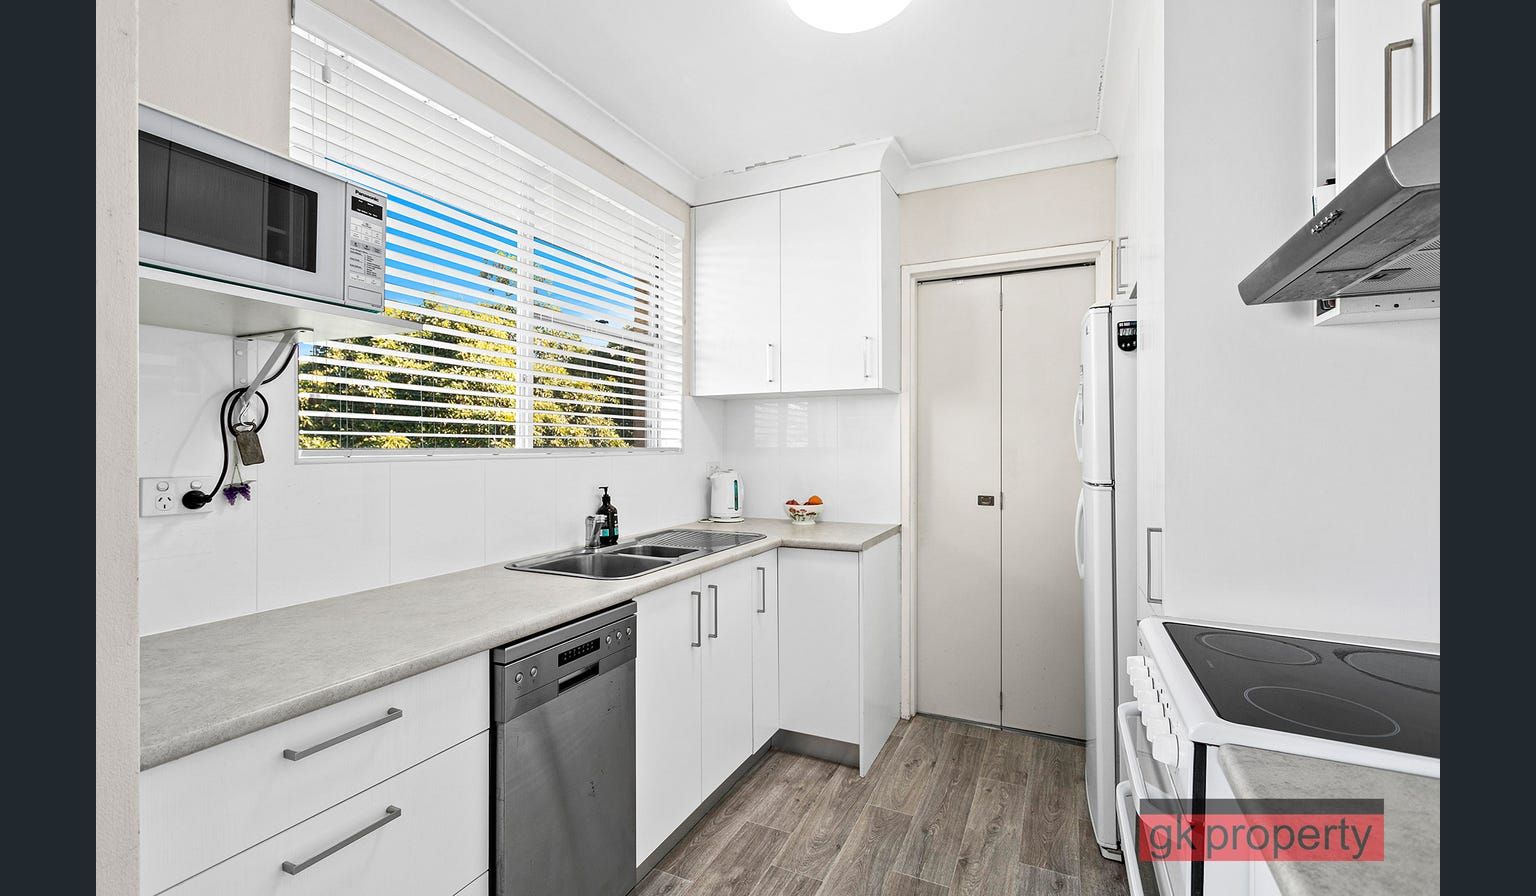 2 bedrooms Apartment / Unit / Flat in 180 Queen Victoria Street BEXLEY NSW, 2207